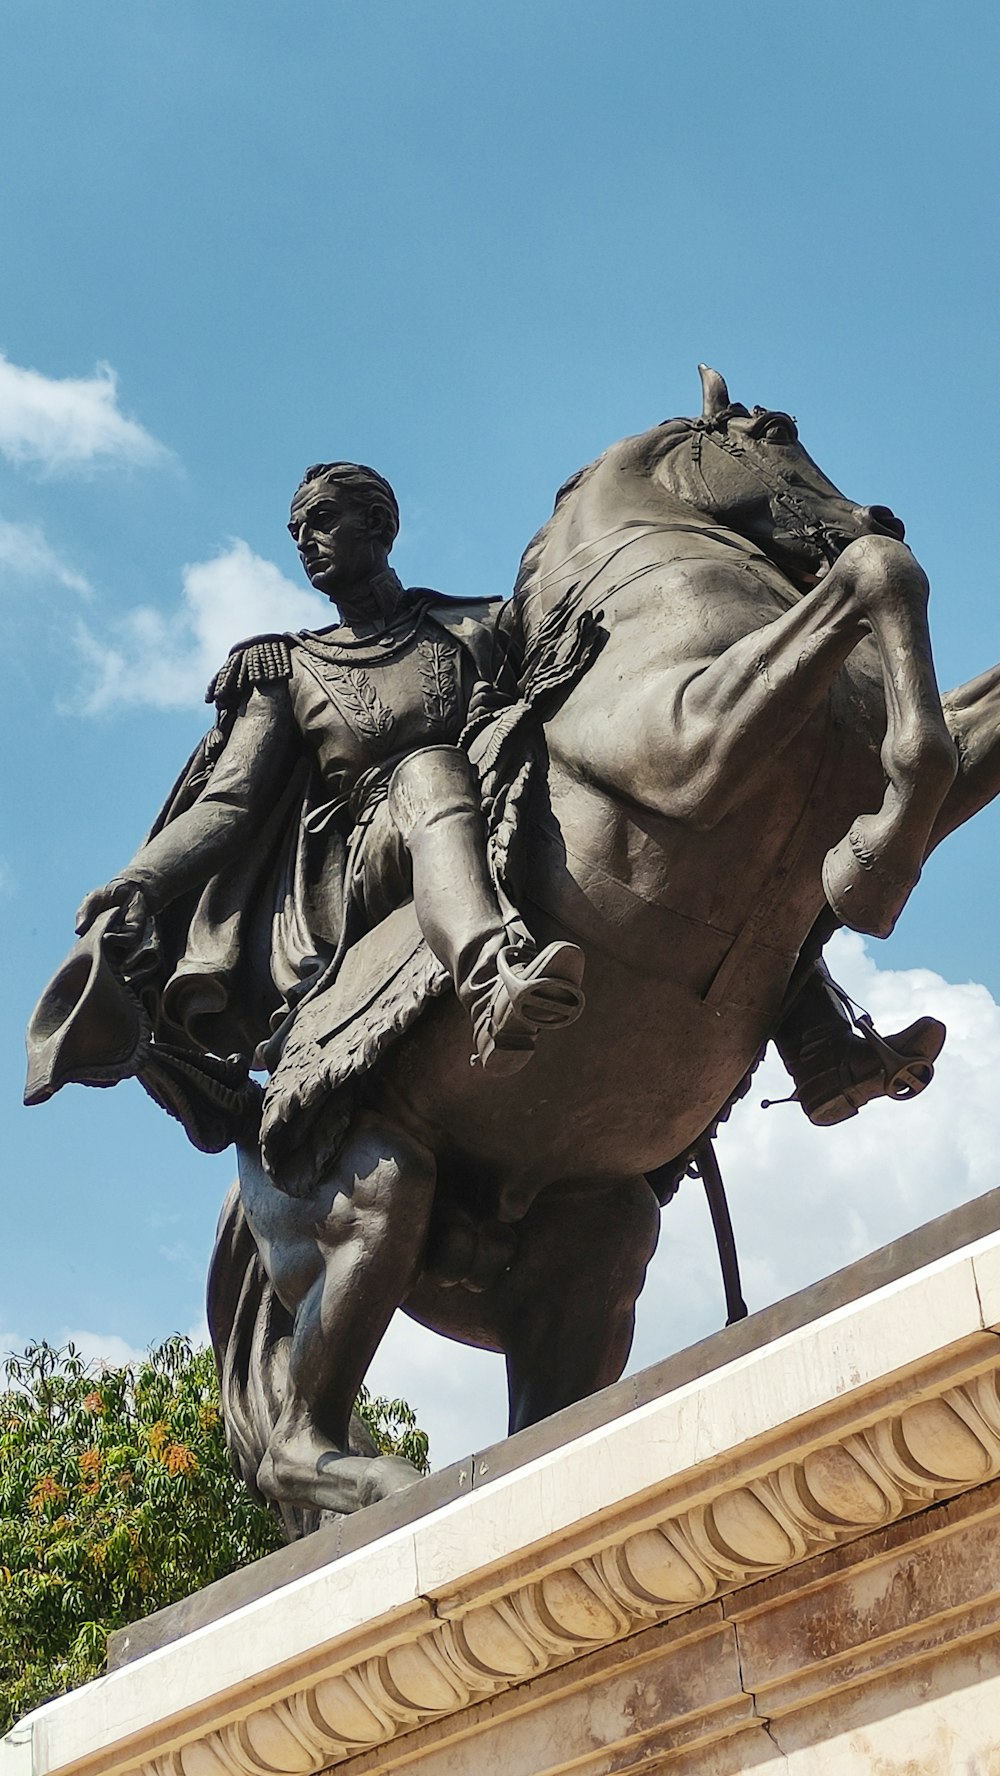 uma estátua de um homem que monta um cavalo